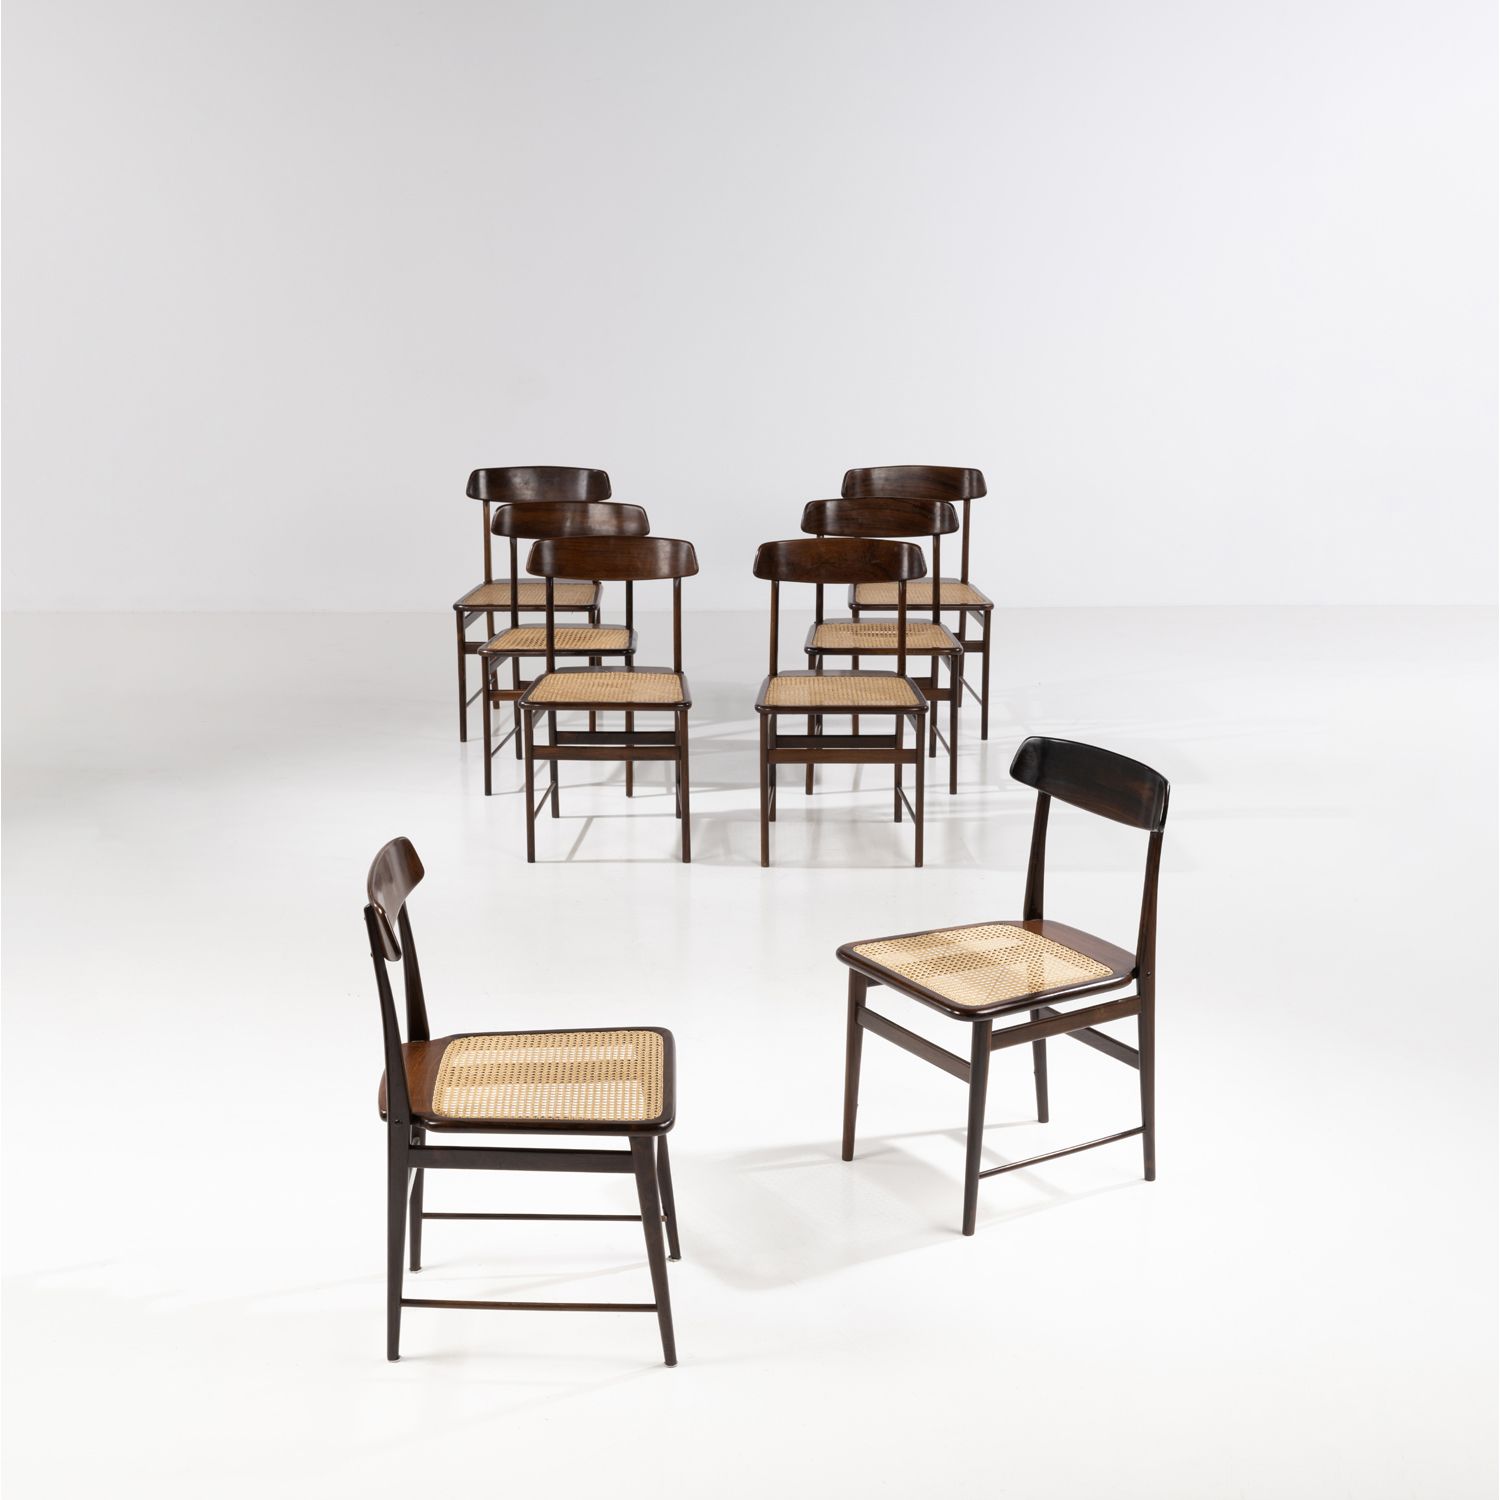 Null Sergio Rodrigues (1927-2014)

Cadeira Lucio Costa

Suite de huit chaises

B&hellip;